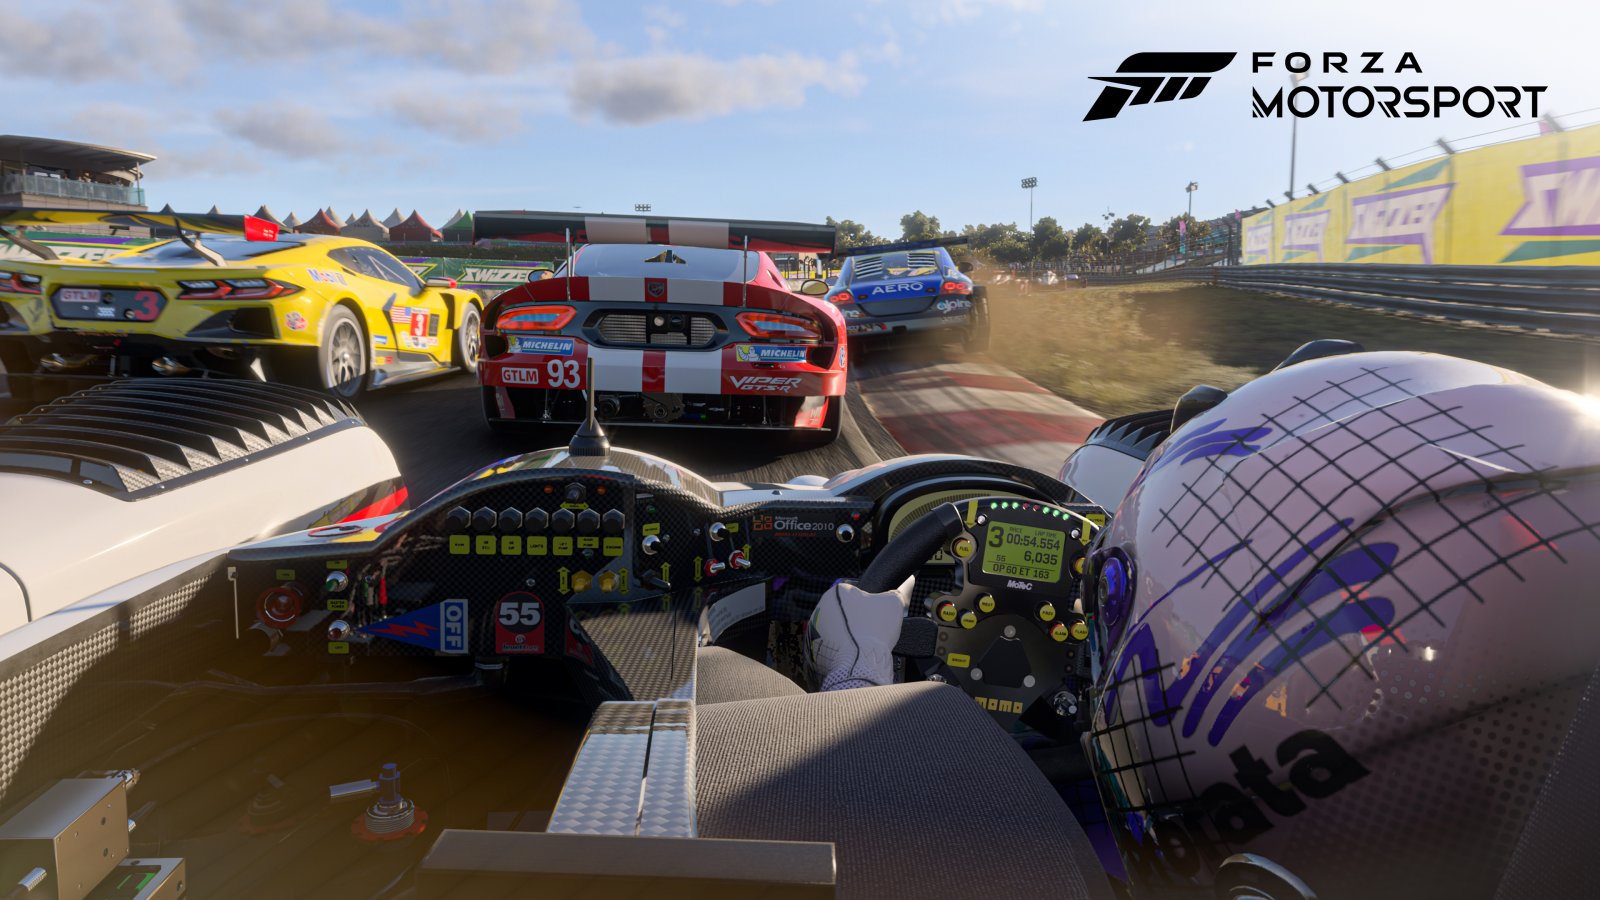 Forza Motorsport: nuove immagini mostrano le evoluzioni grafiche del gioco Xbox